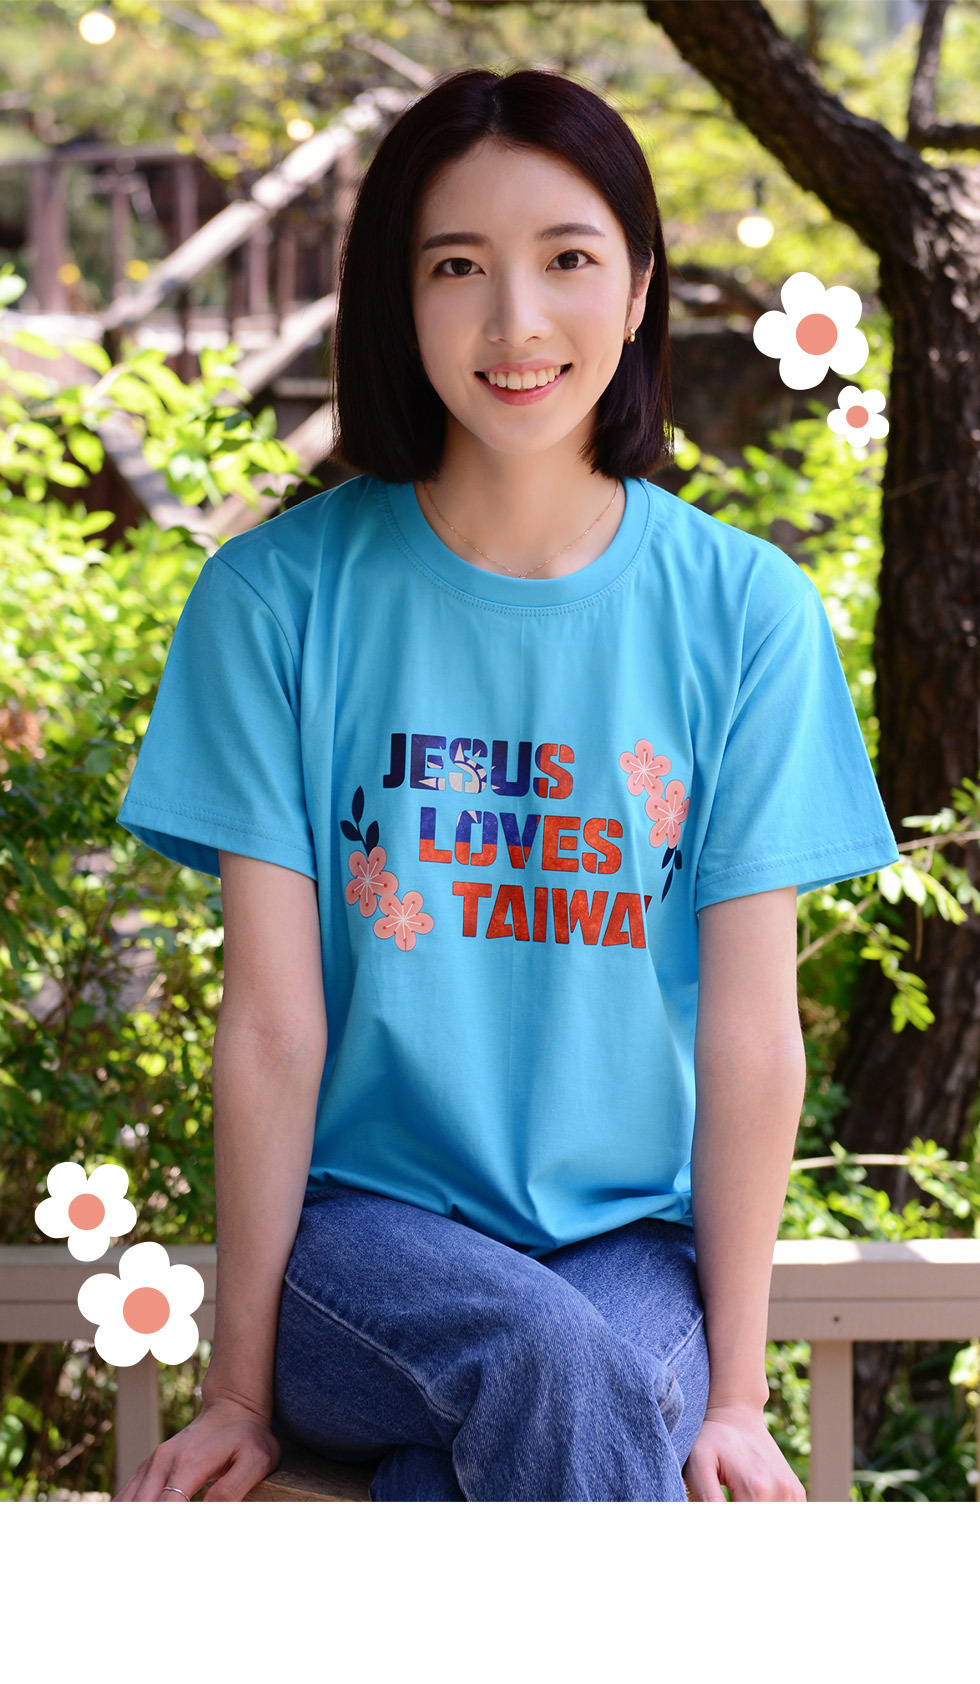 교회 단체티셔츠 타이완 선교티 (Jesus loves Taiwan) - 미션트립 단체 성인티셔츠(대만선교) 